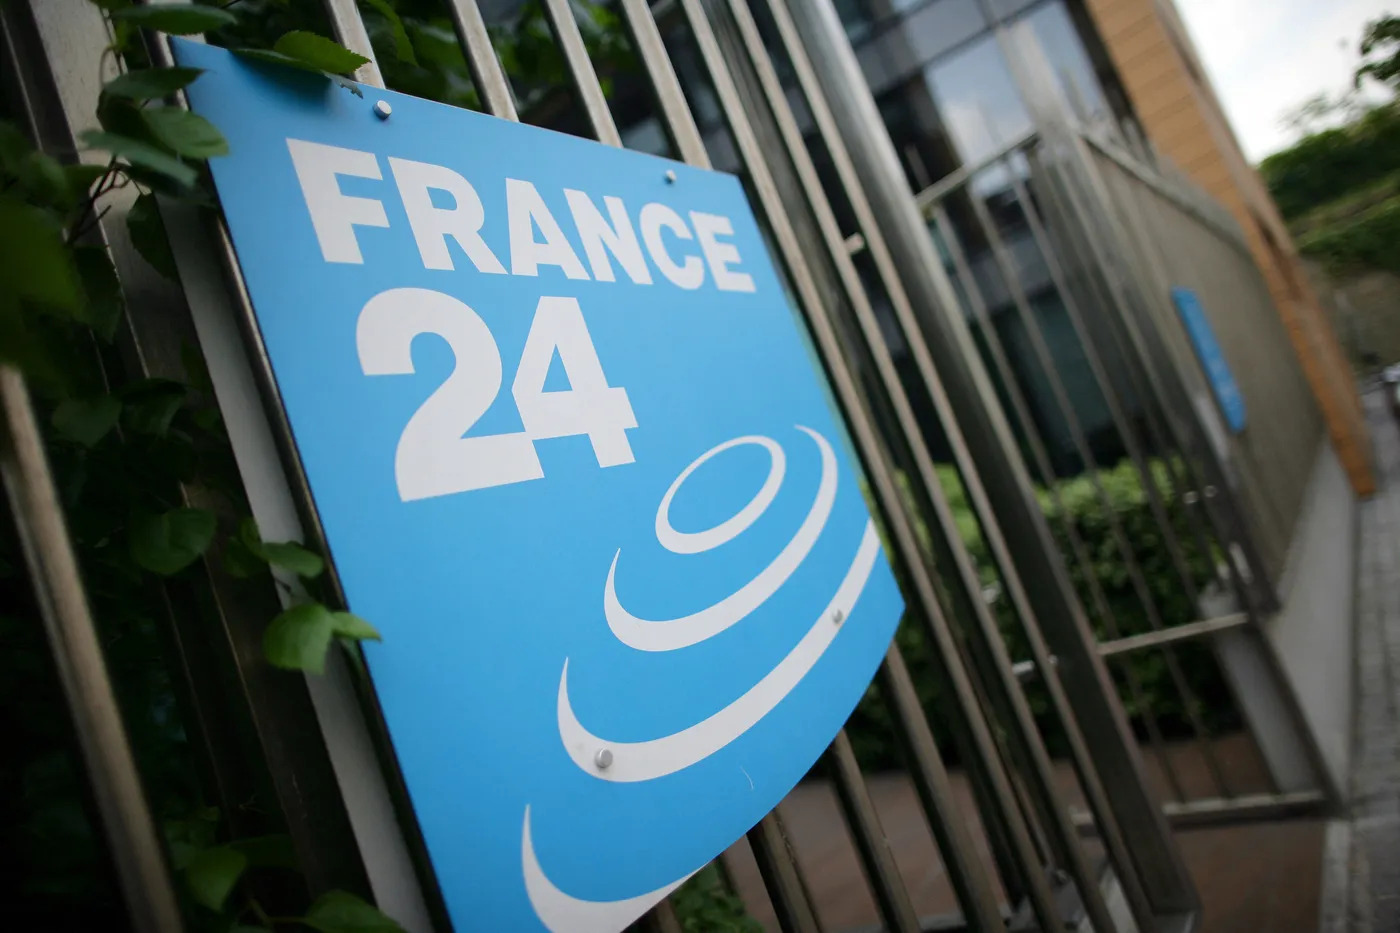 Patru jurnaliști de la France24, suspendați pentru comentarii antisemite și pro-palestiniene pe social media